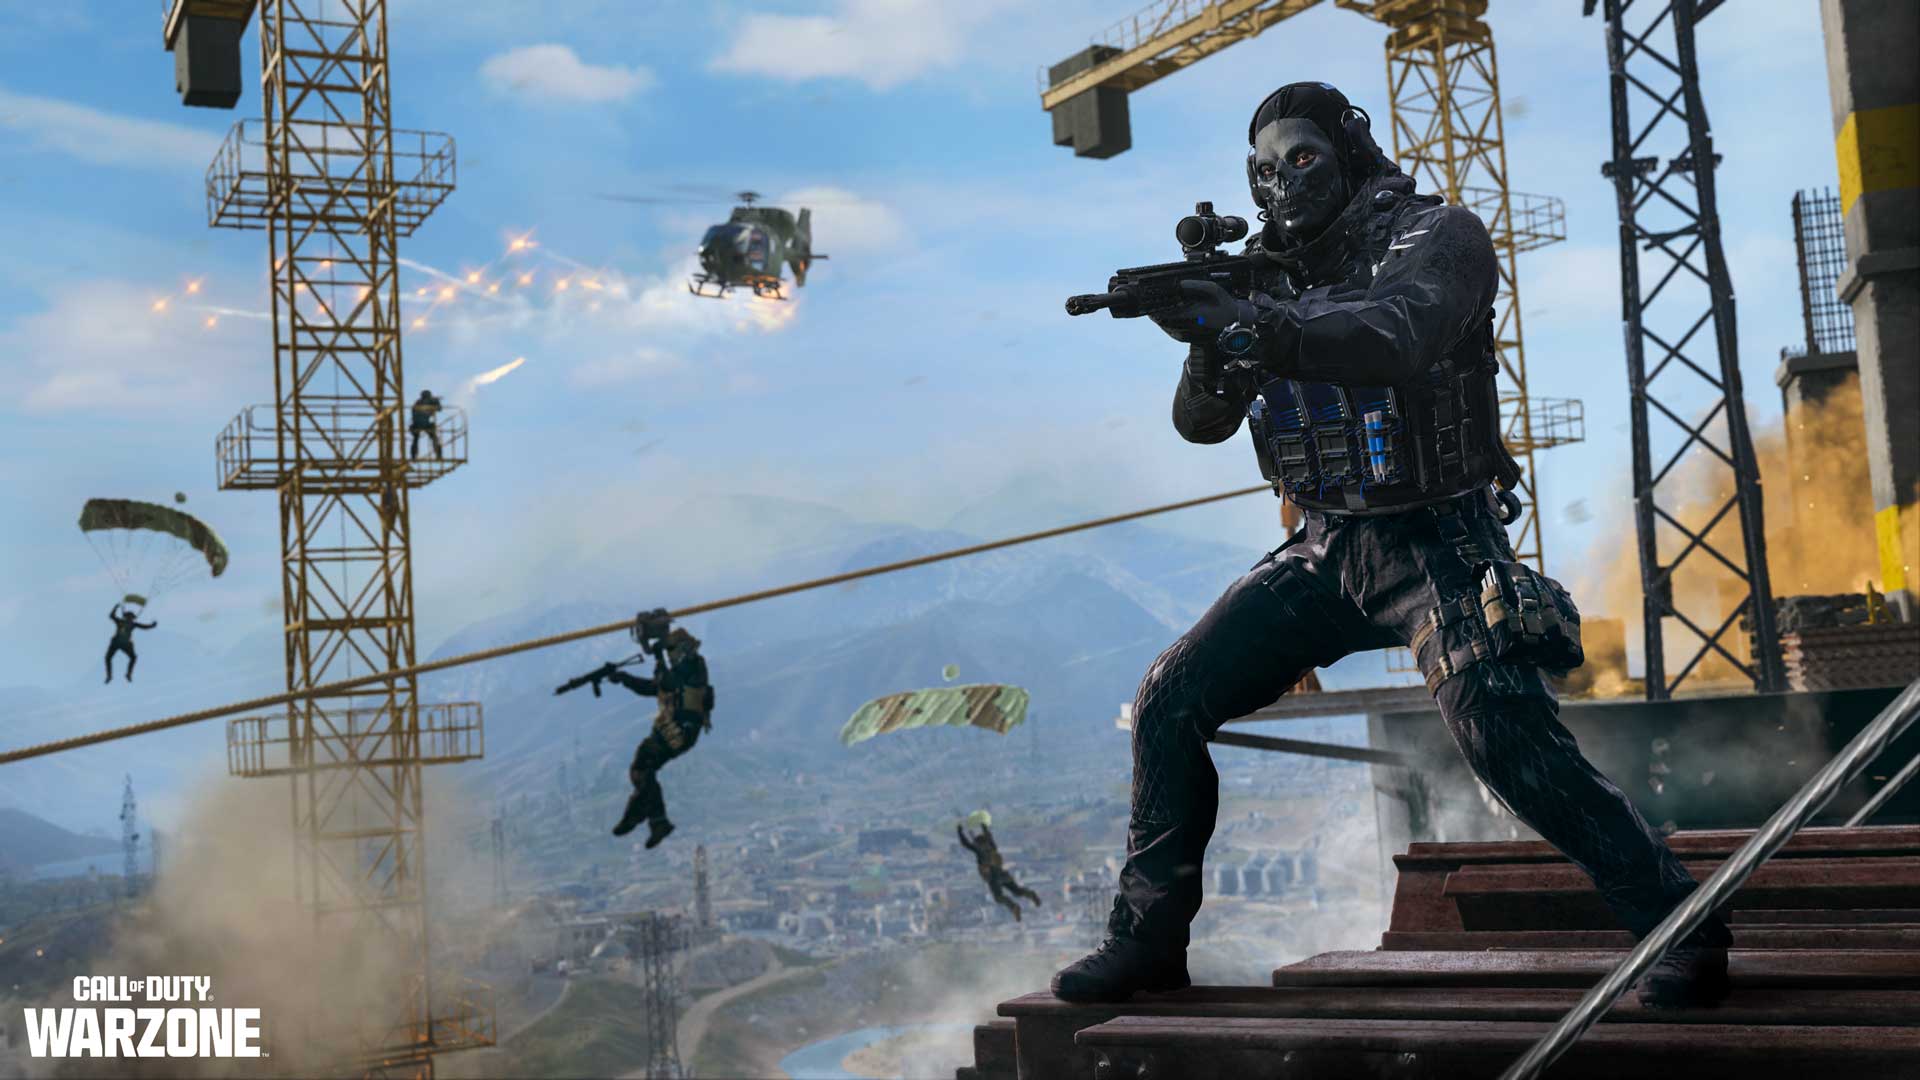 Activision revela antes da hora os requisitos de sistema para Call of Duty:  Modern Warfare III